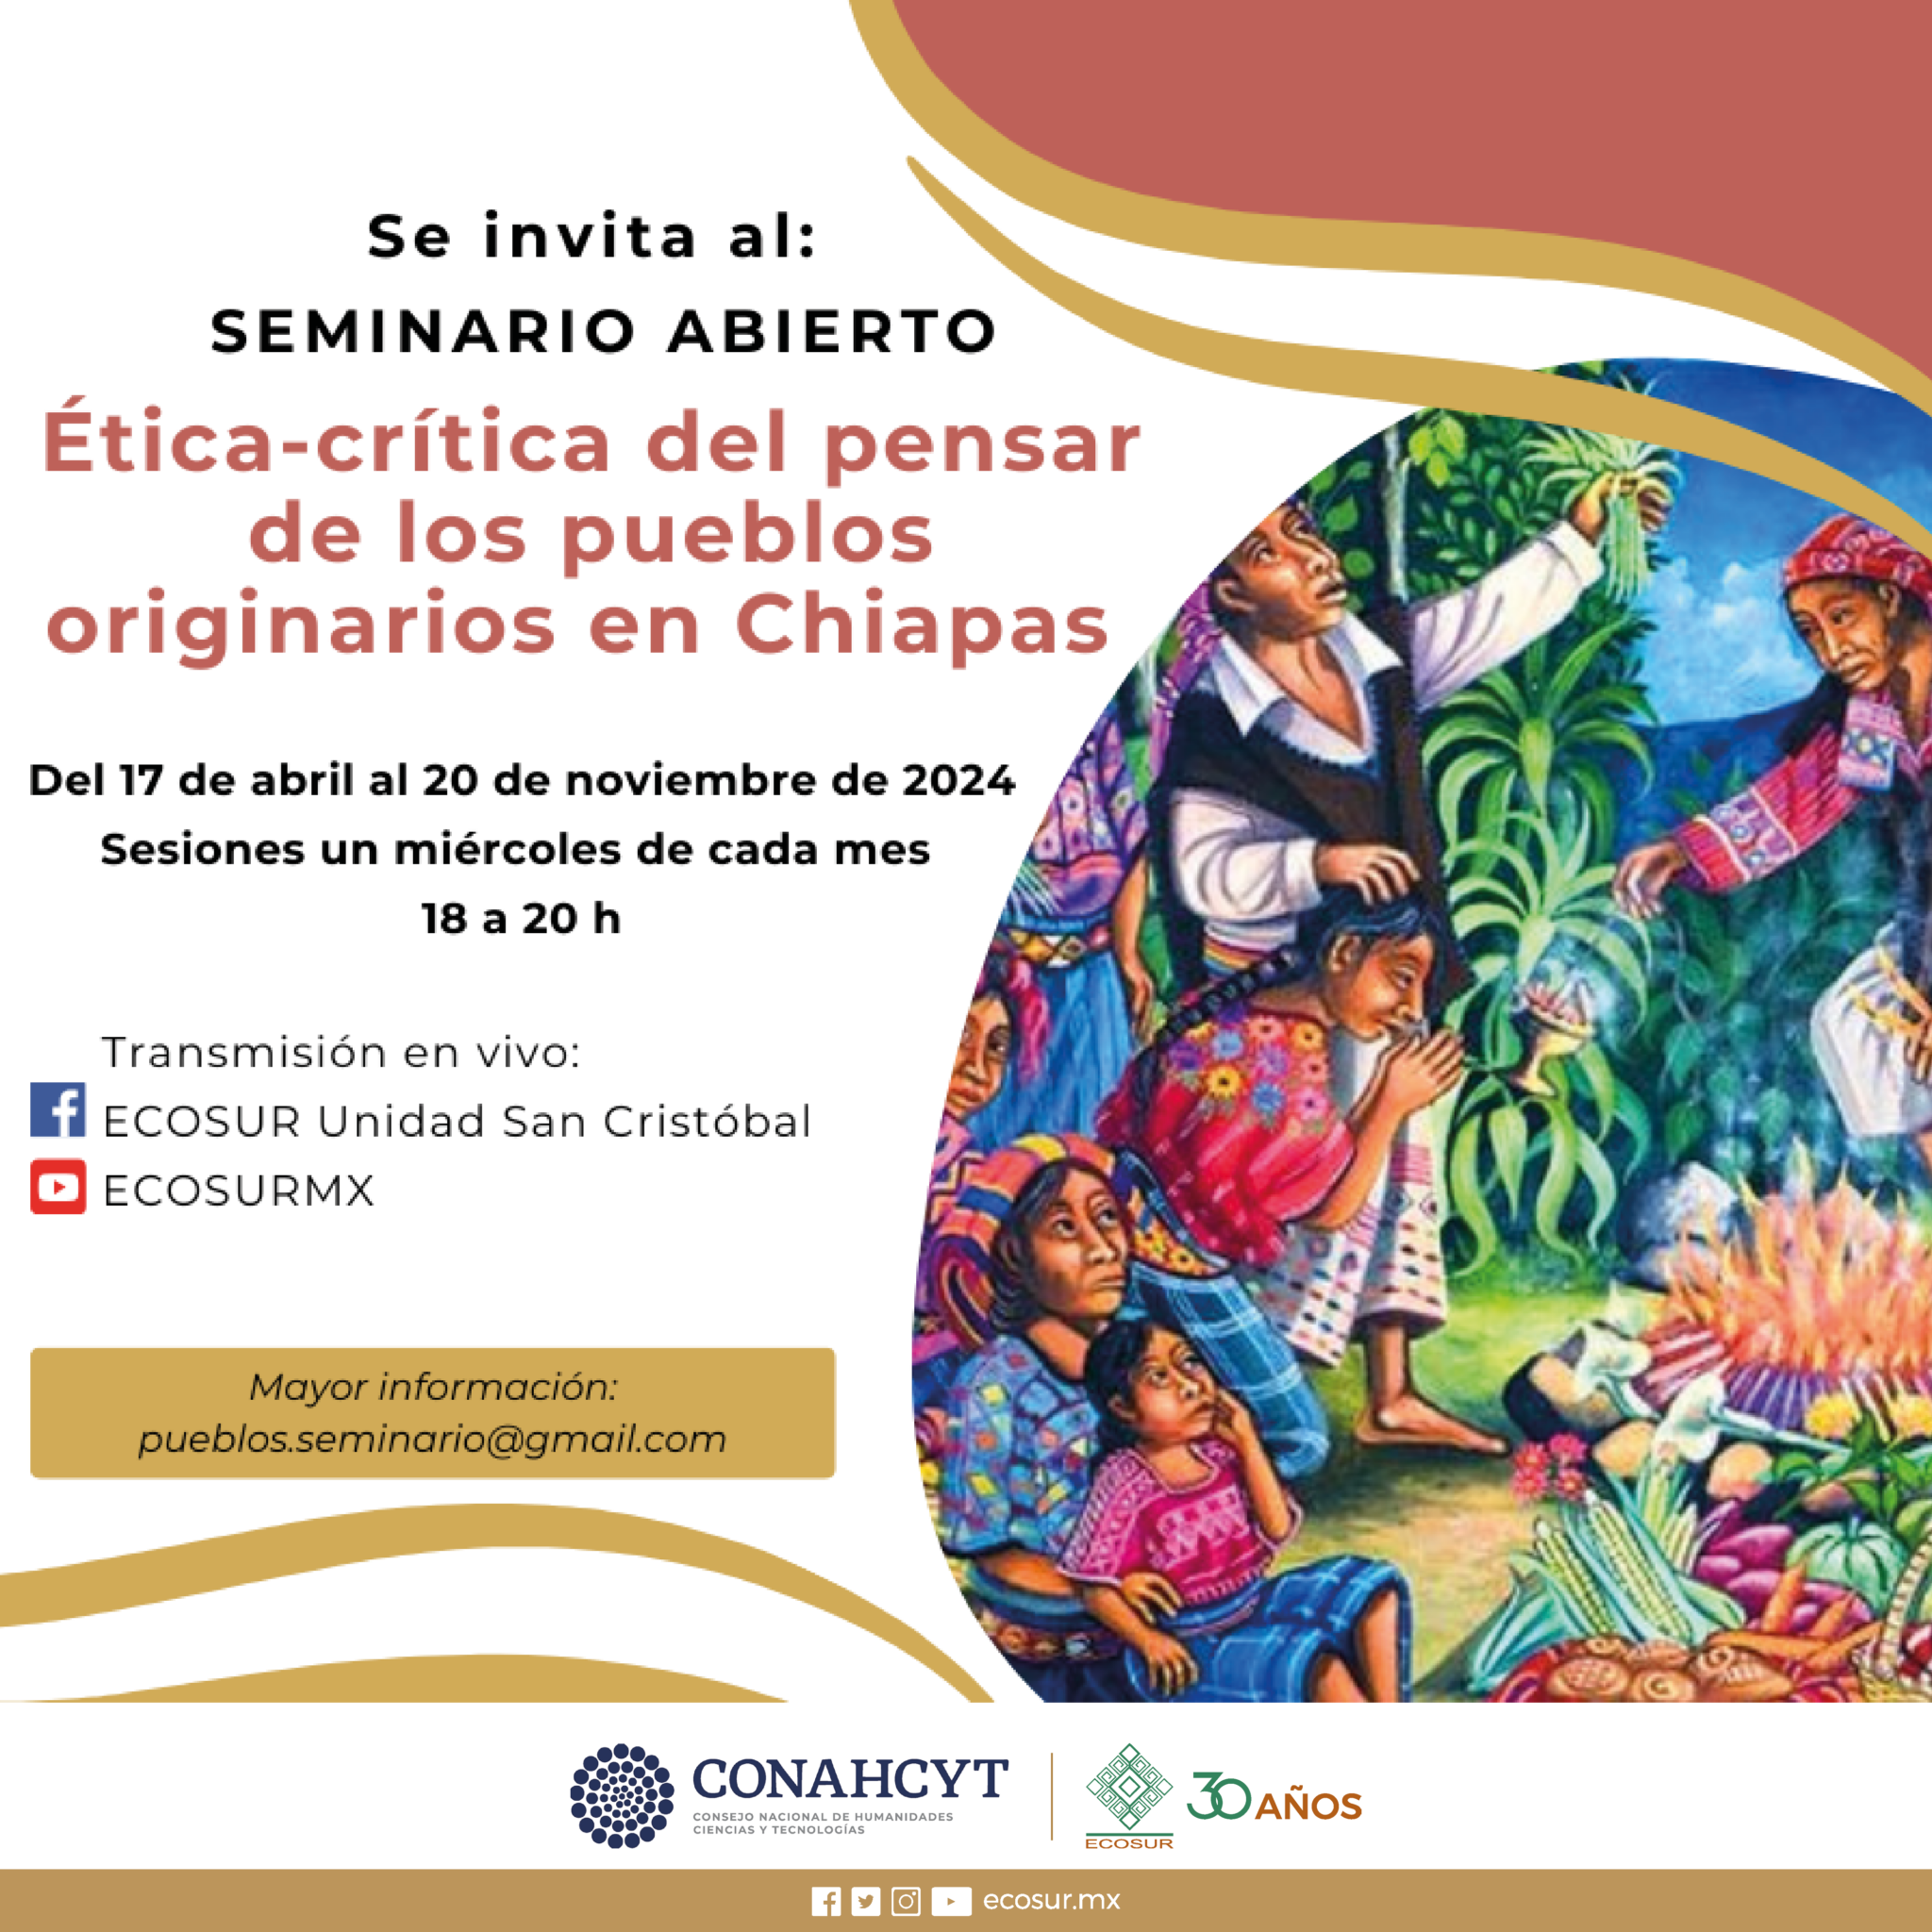 Seminario abierto “Ética- crítica del pensar de los pueblos originarios en Chiapas”